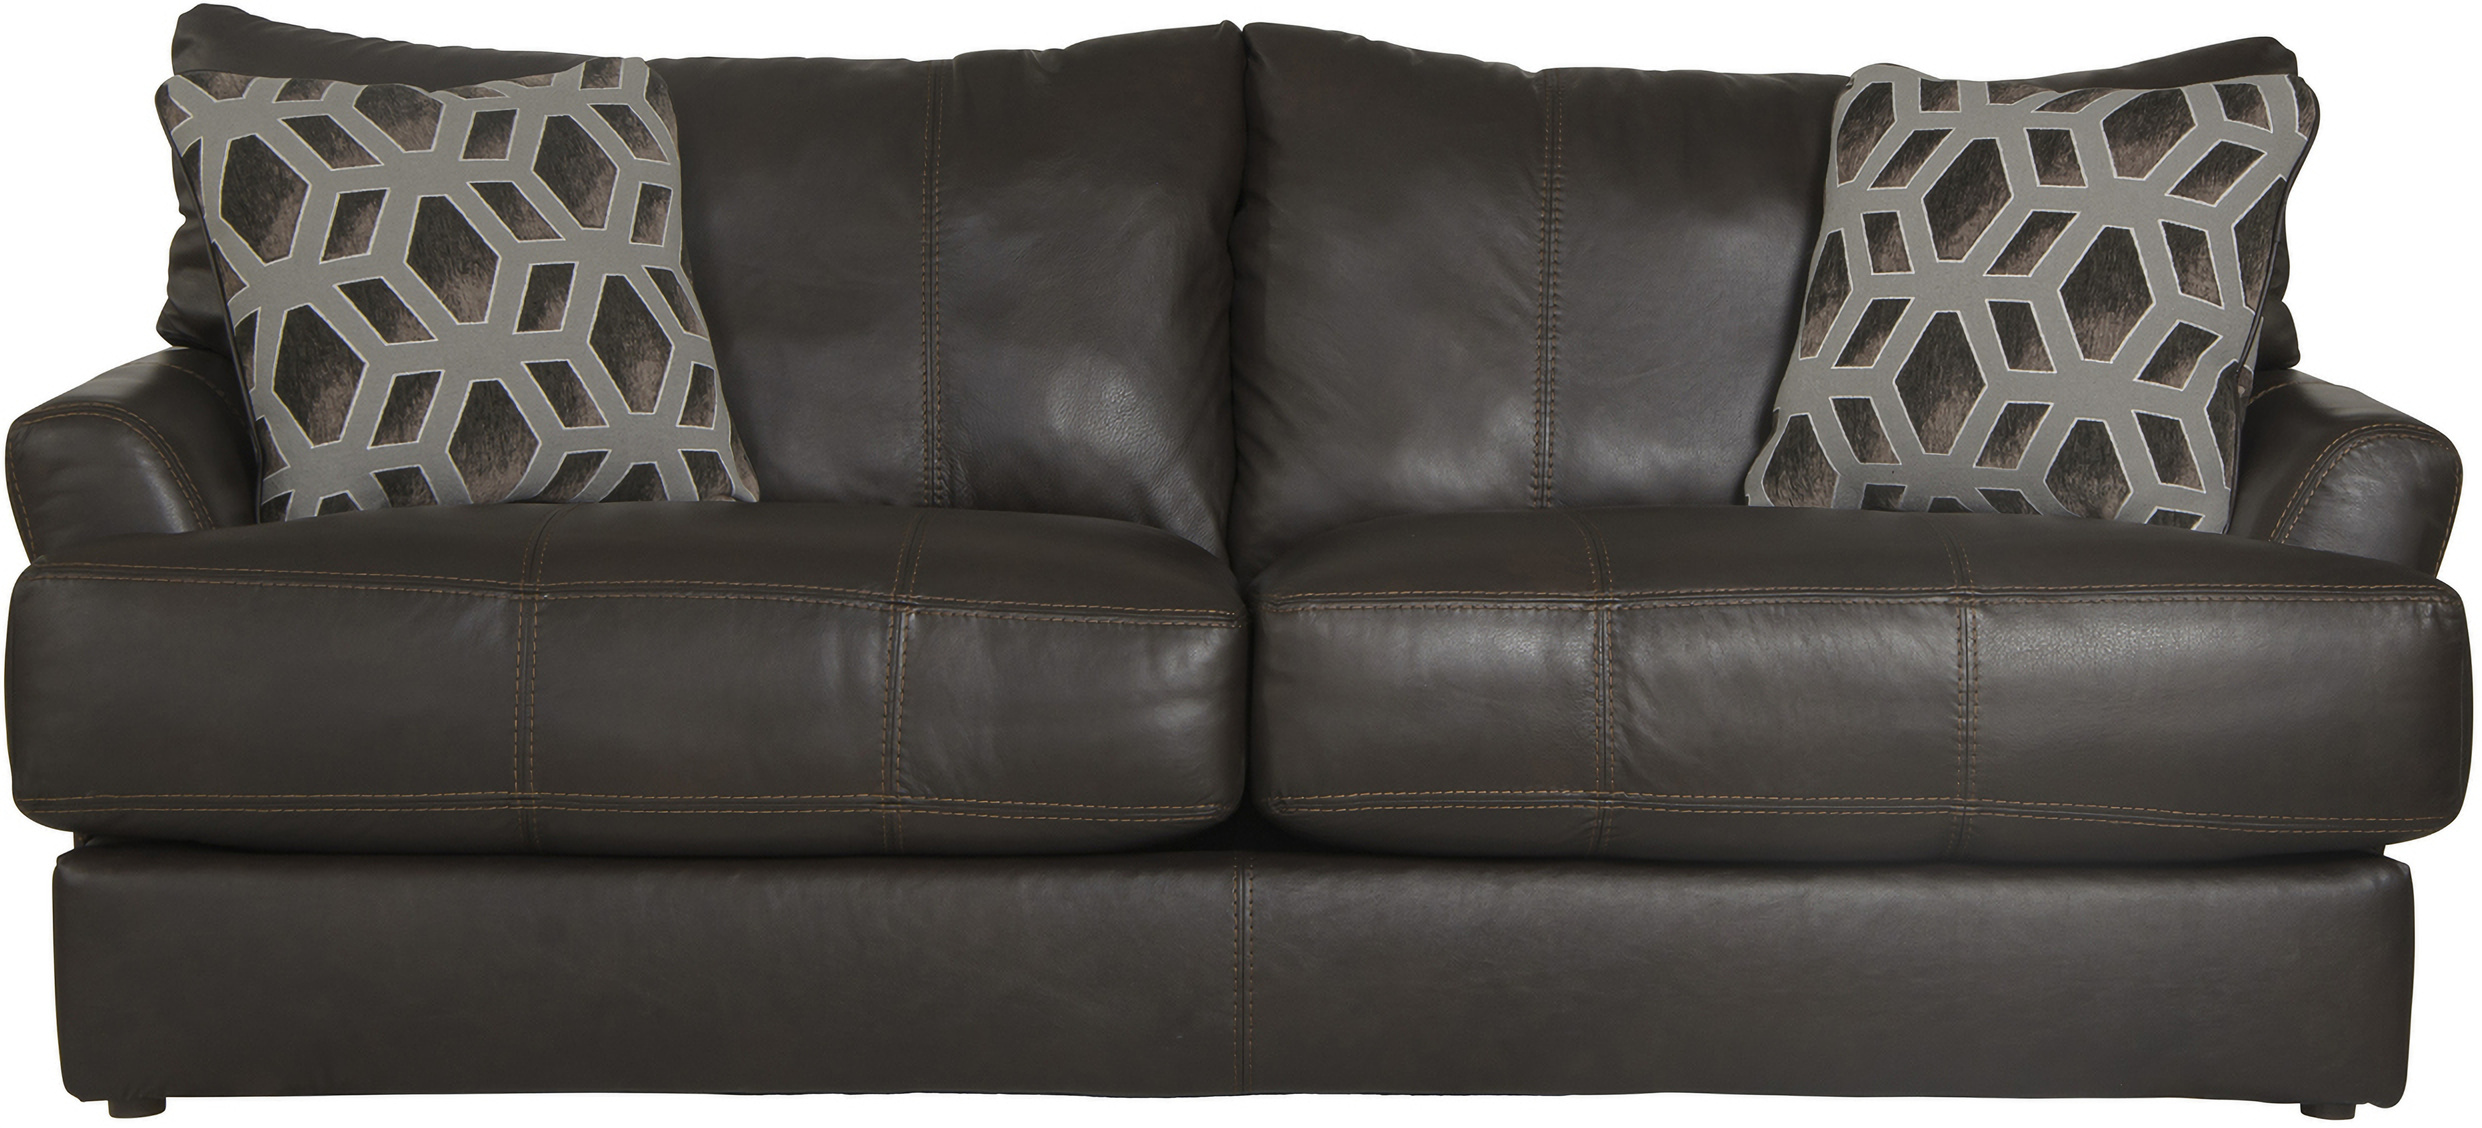 Black White Leather Pillows, Pillows Brown Leather Sofa